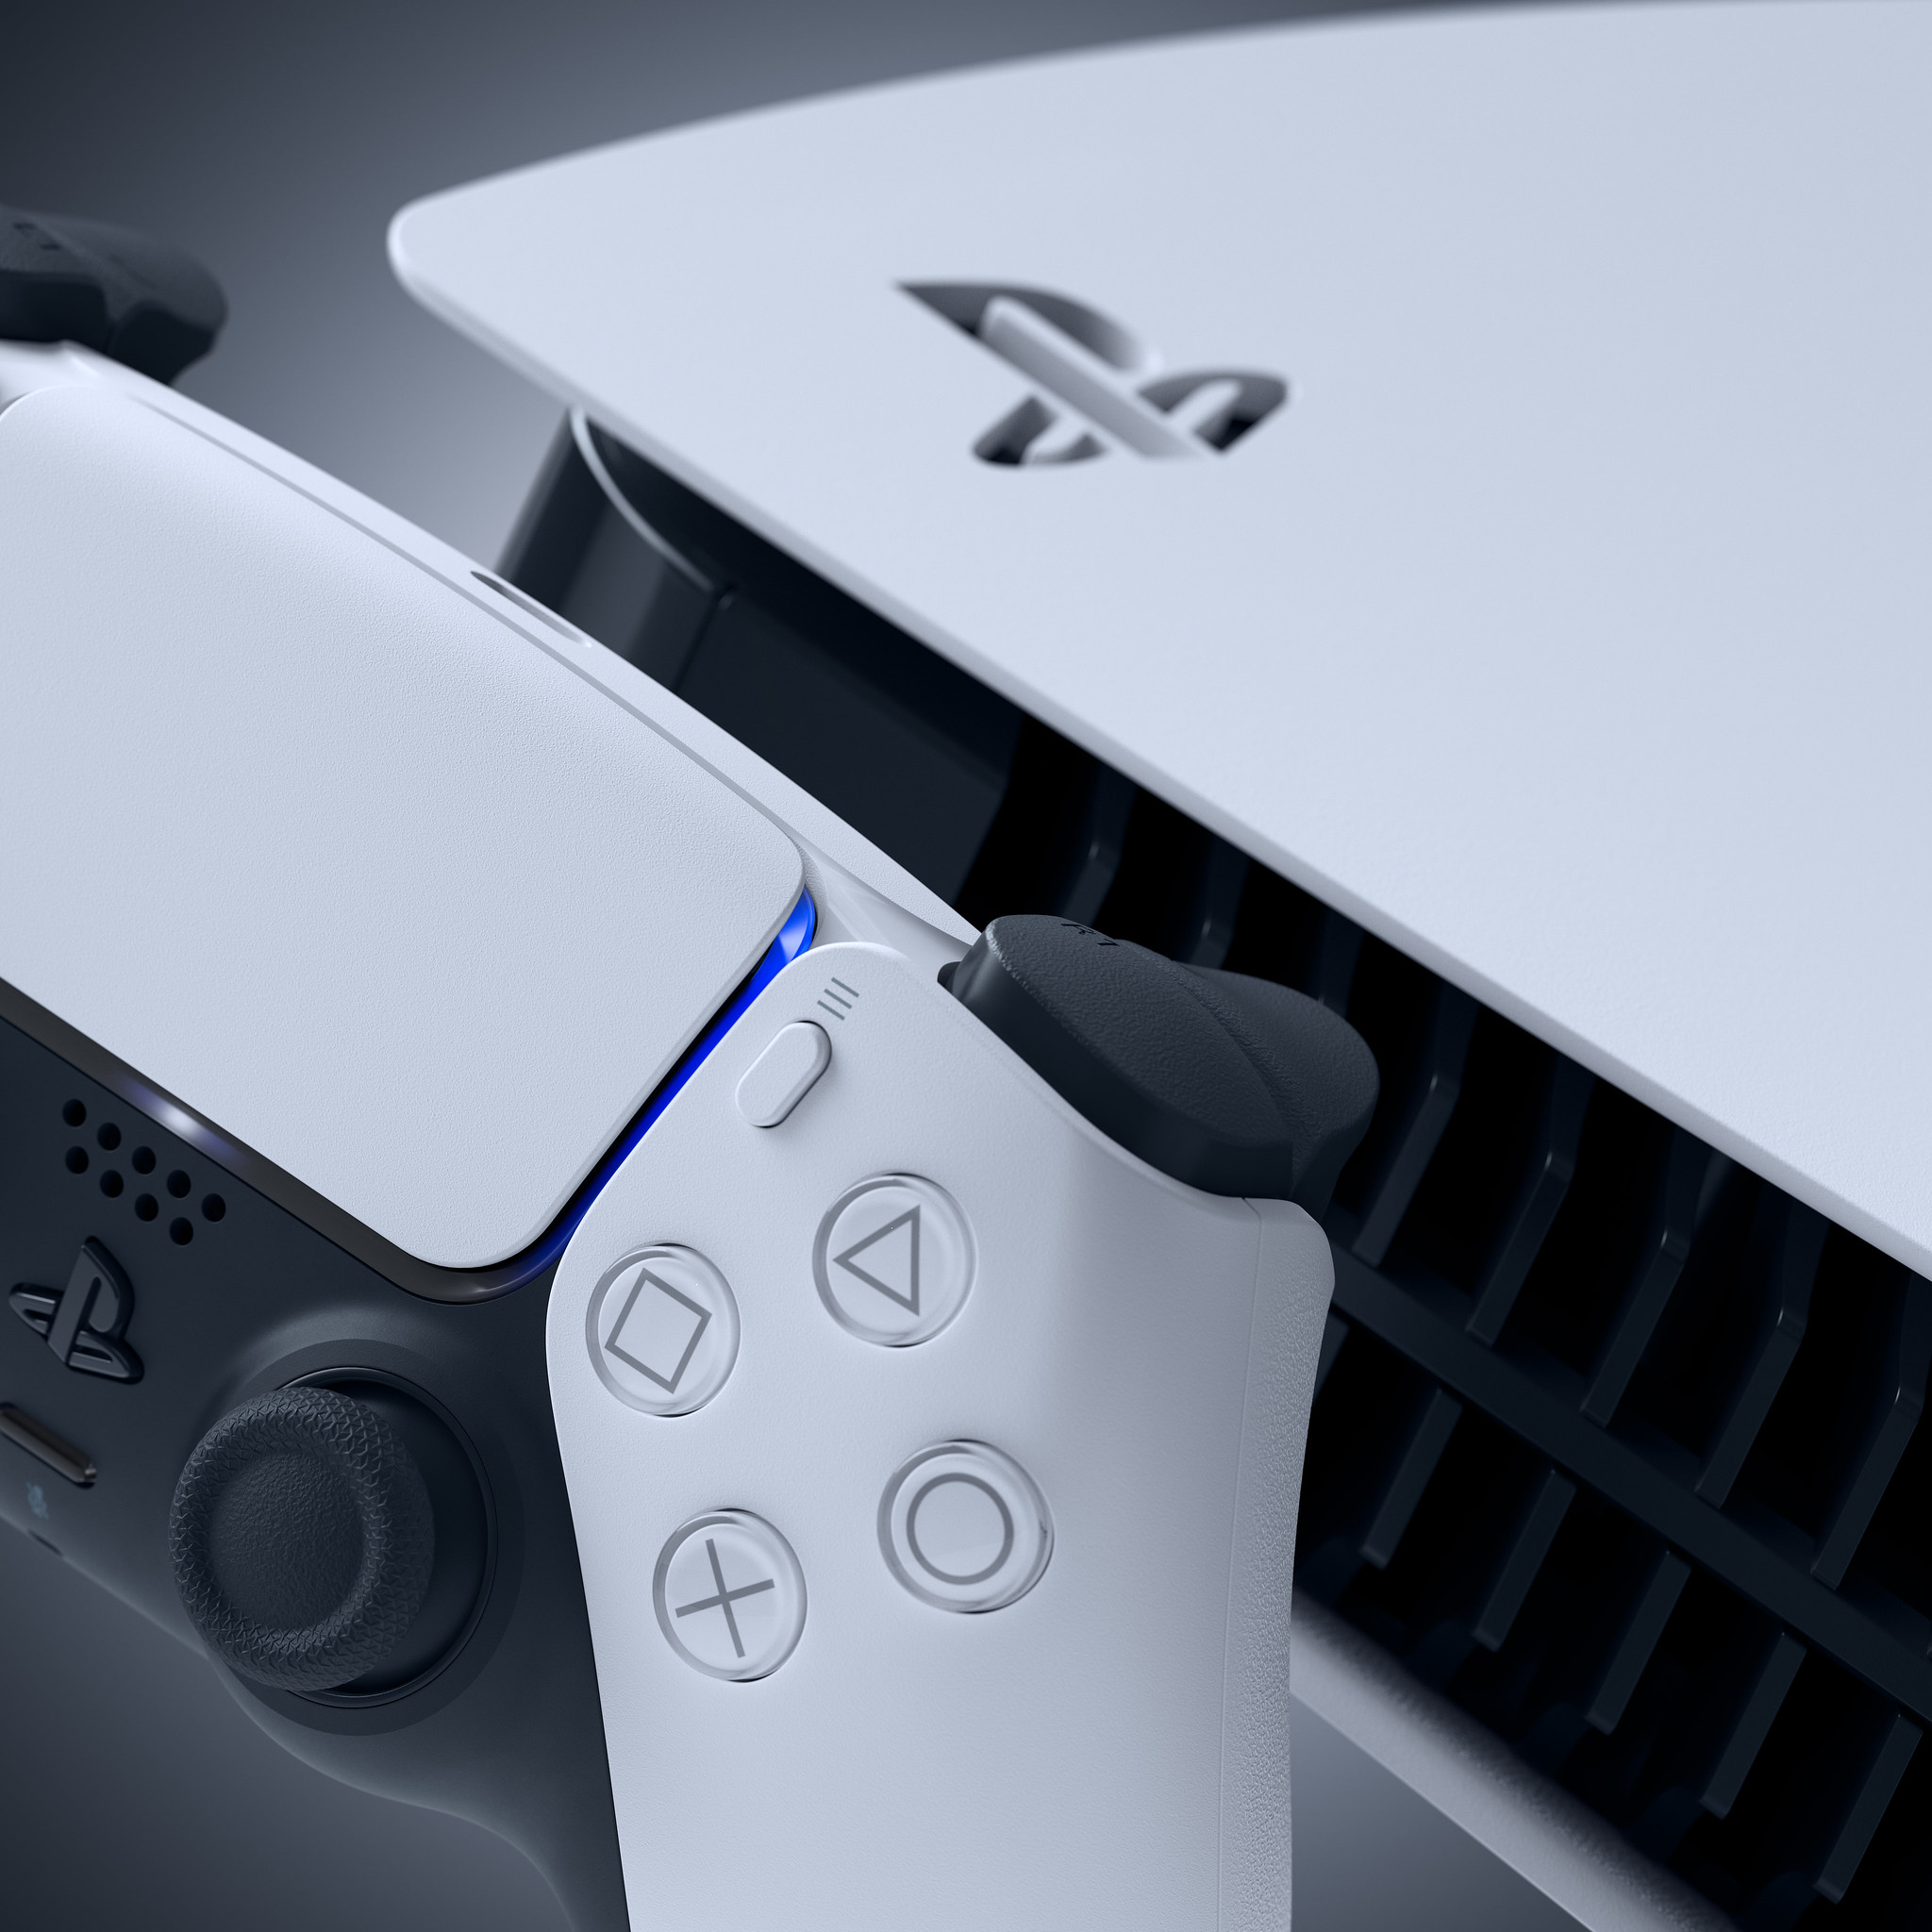 PS5 и аксессуары к консоли во всей красе на фотографиях Sony